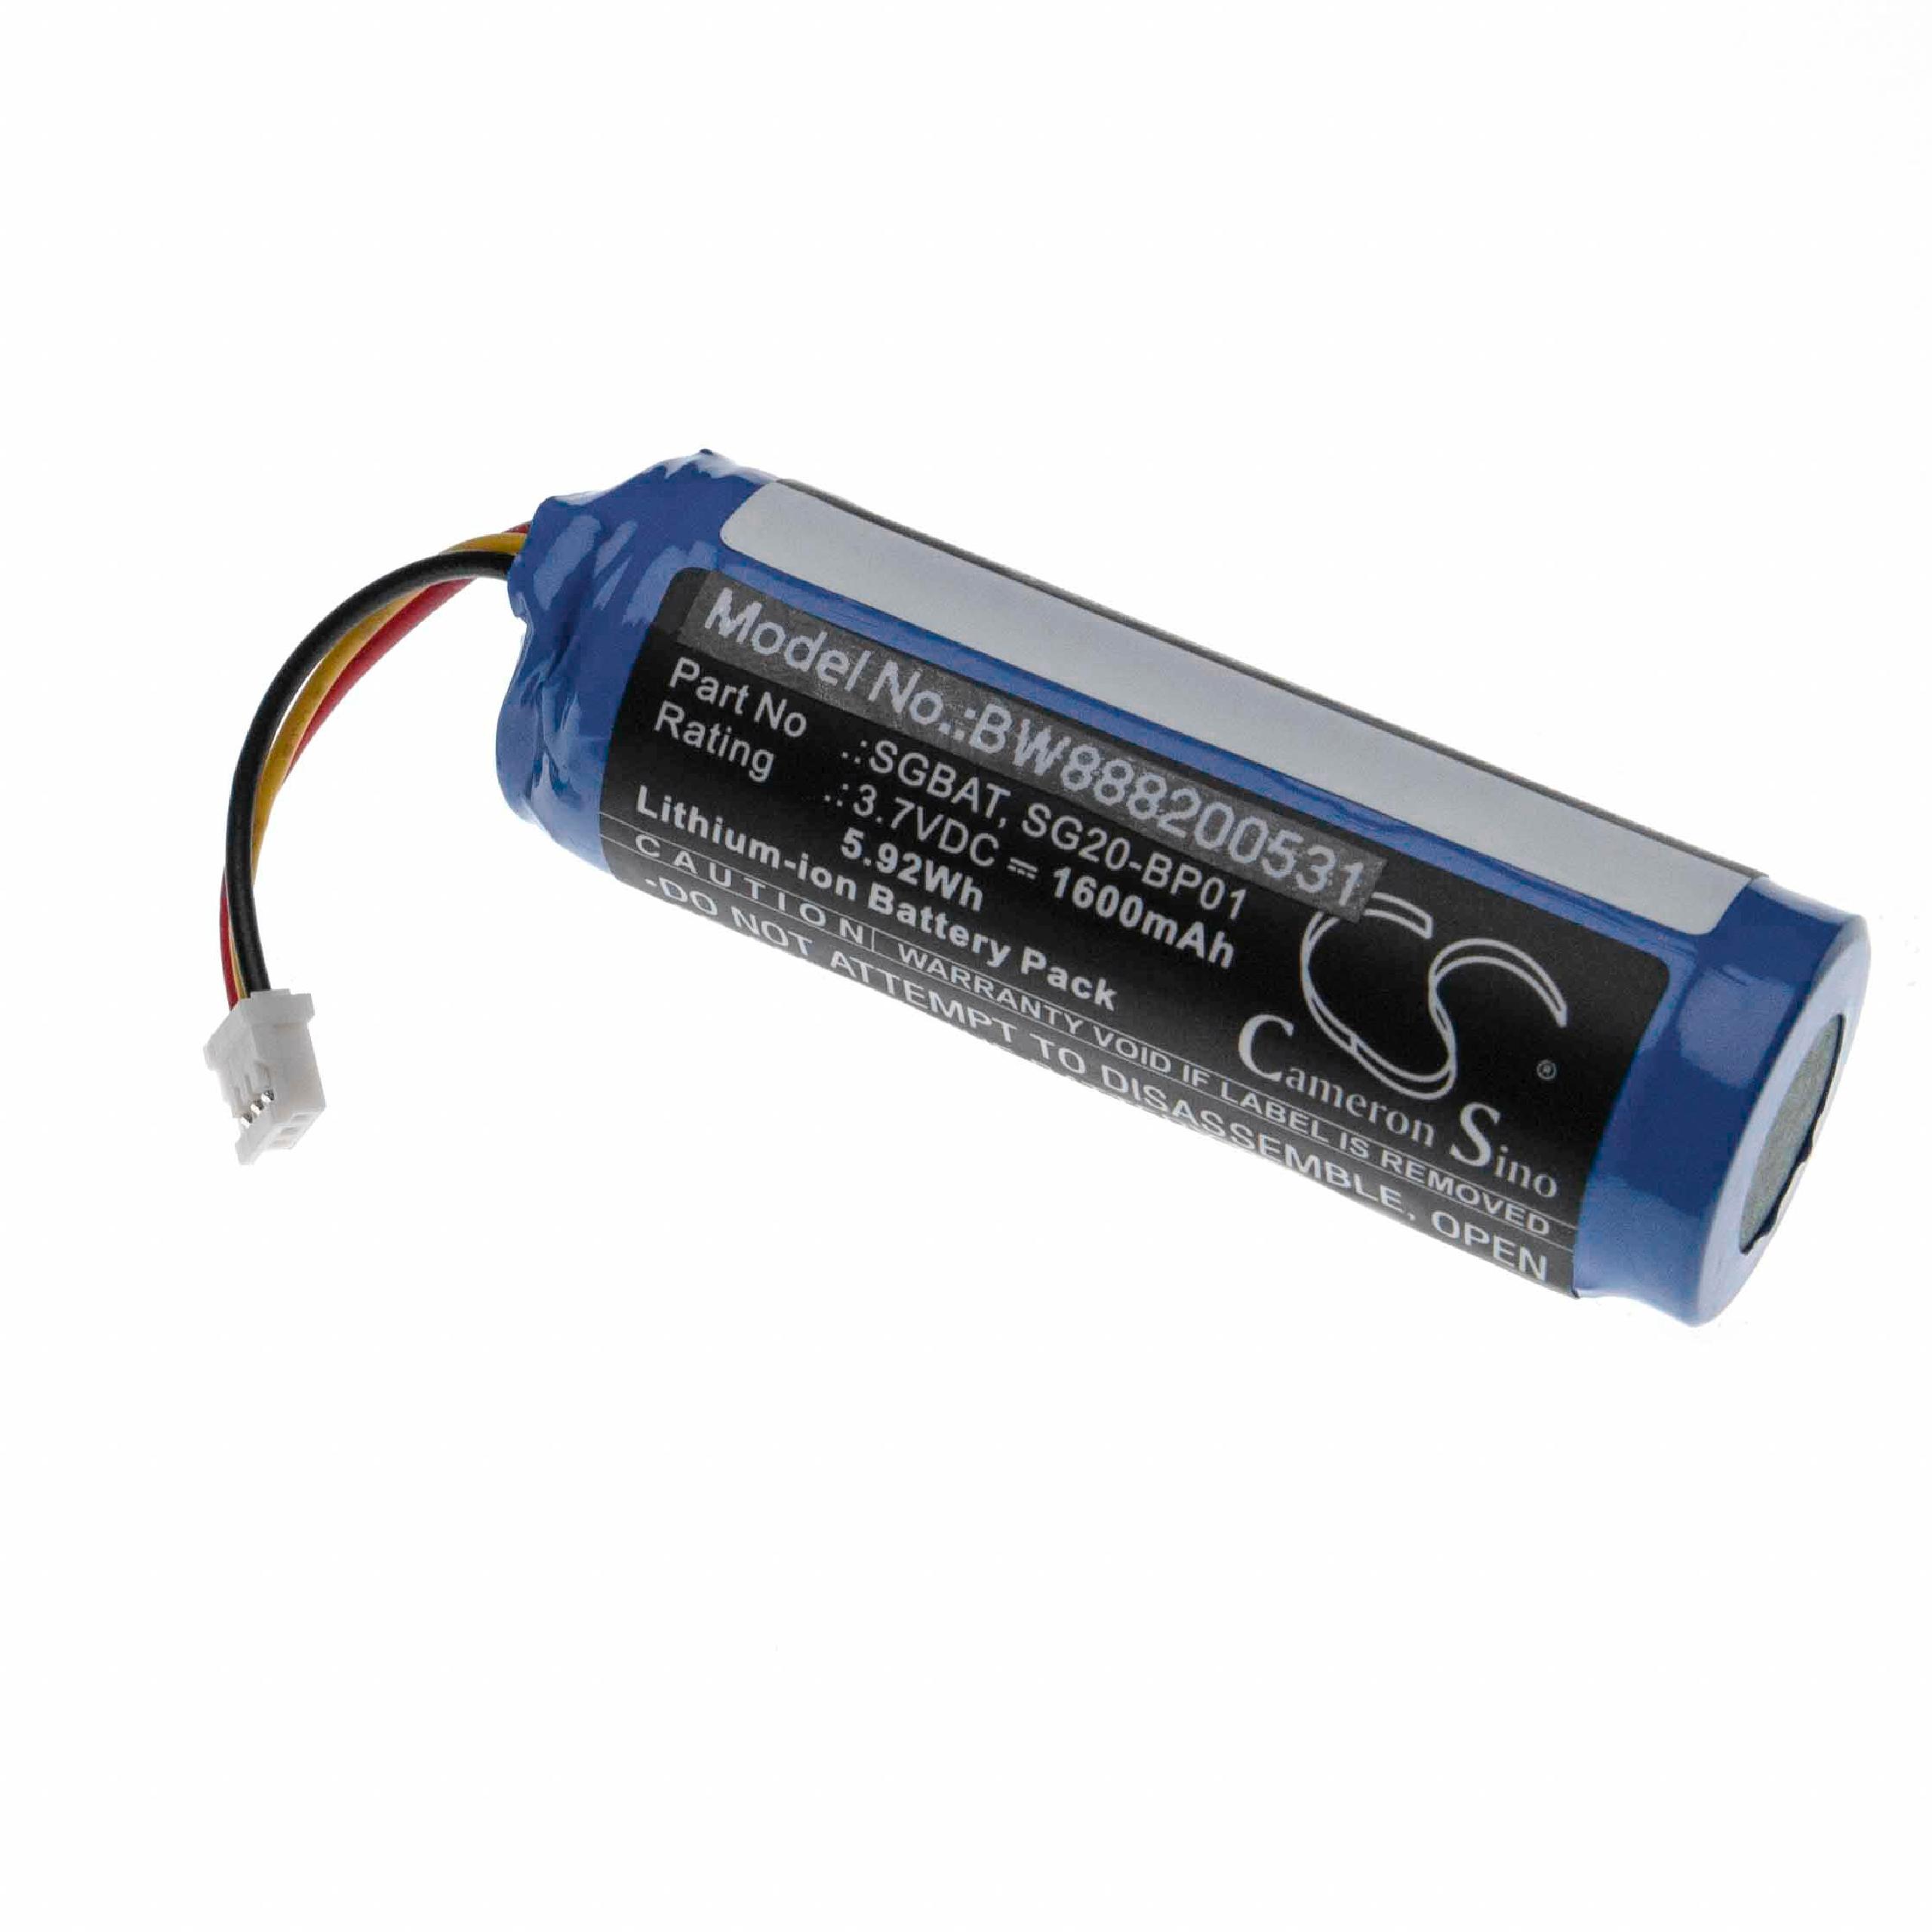 Batterie remplace Intermec SGBAT, SG20-BP01 pour scanner de code-barre - 1600mAh 3,7V Li-ion